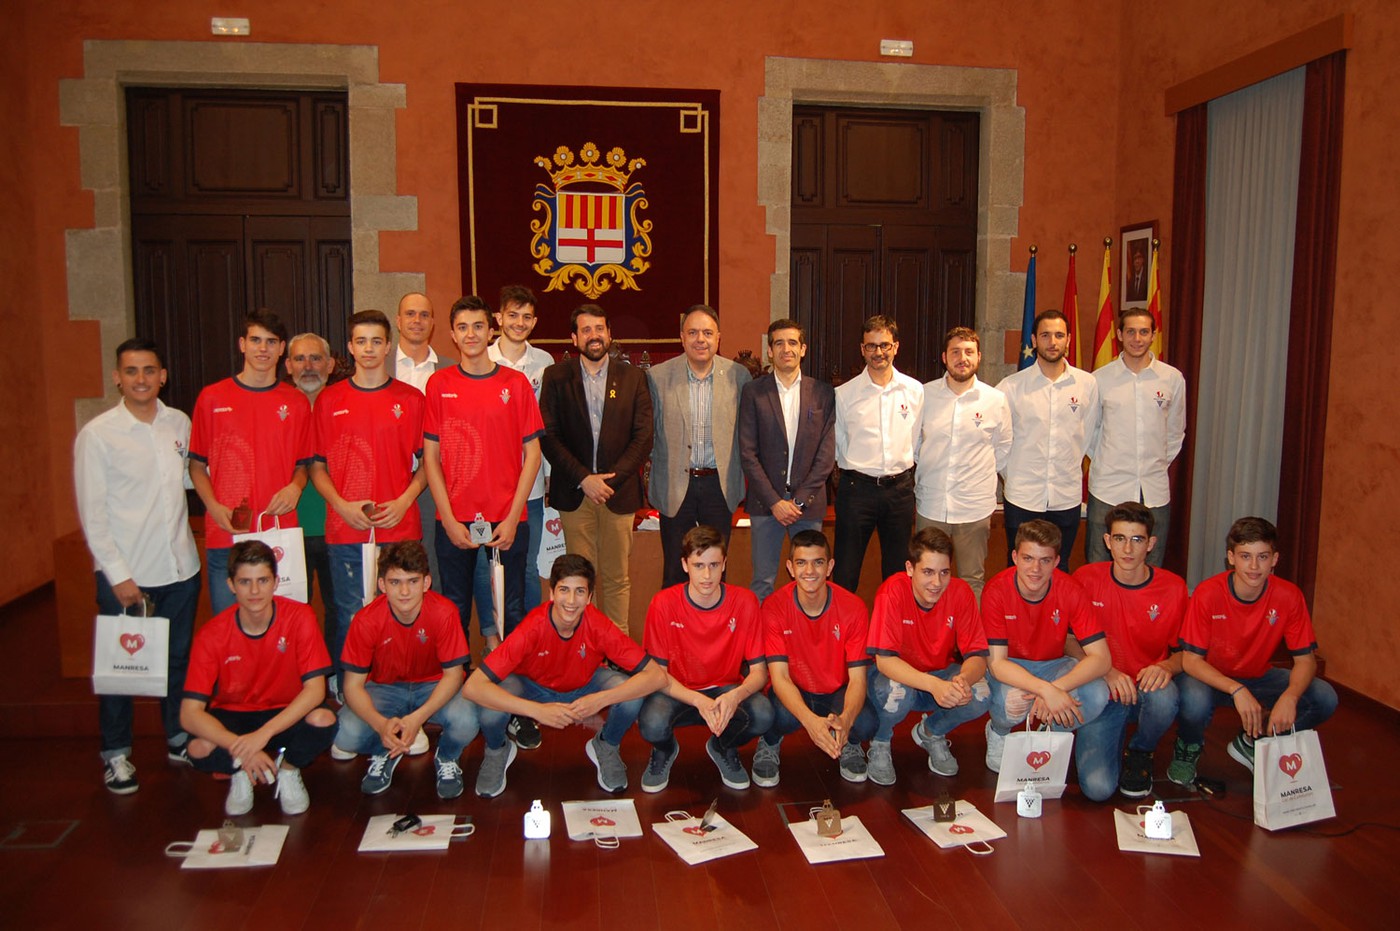 Recepció a l’Ajuntament de l’equip Cadet A del Club Bàsquet Manresa 2015 pel 3r lloc al Campionat de Catalunya i 8è al Campionat d’Espanya